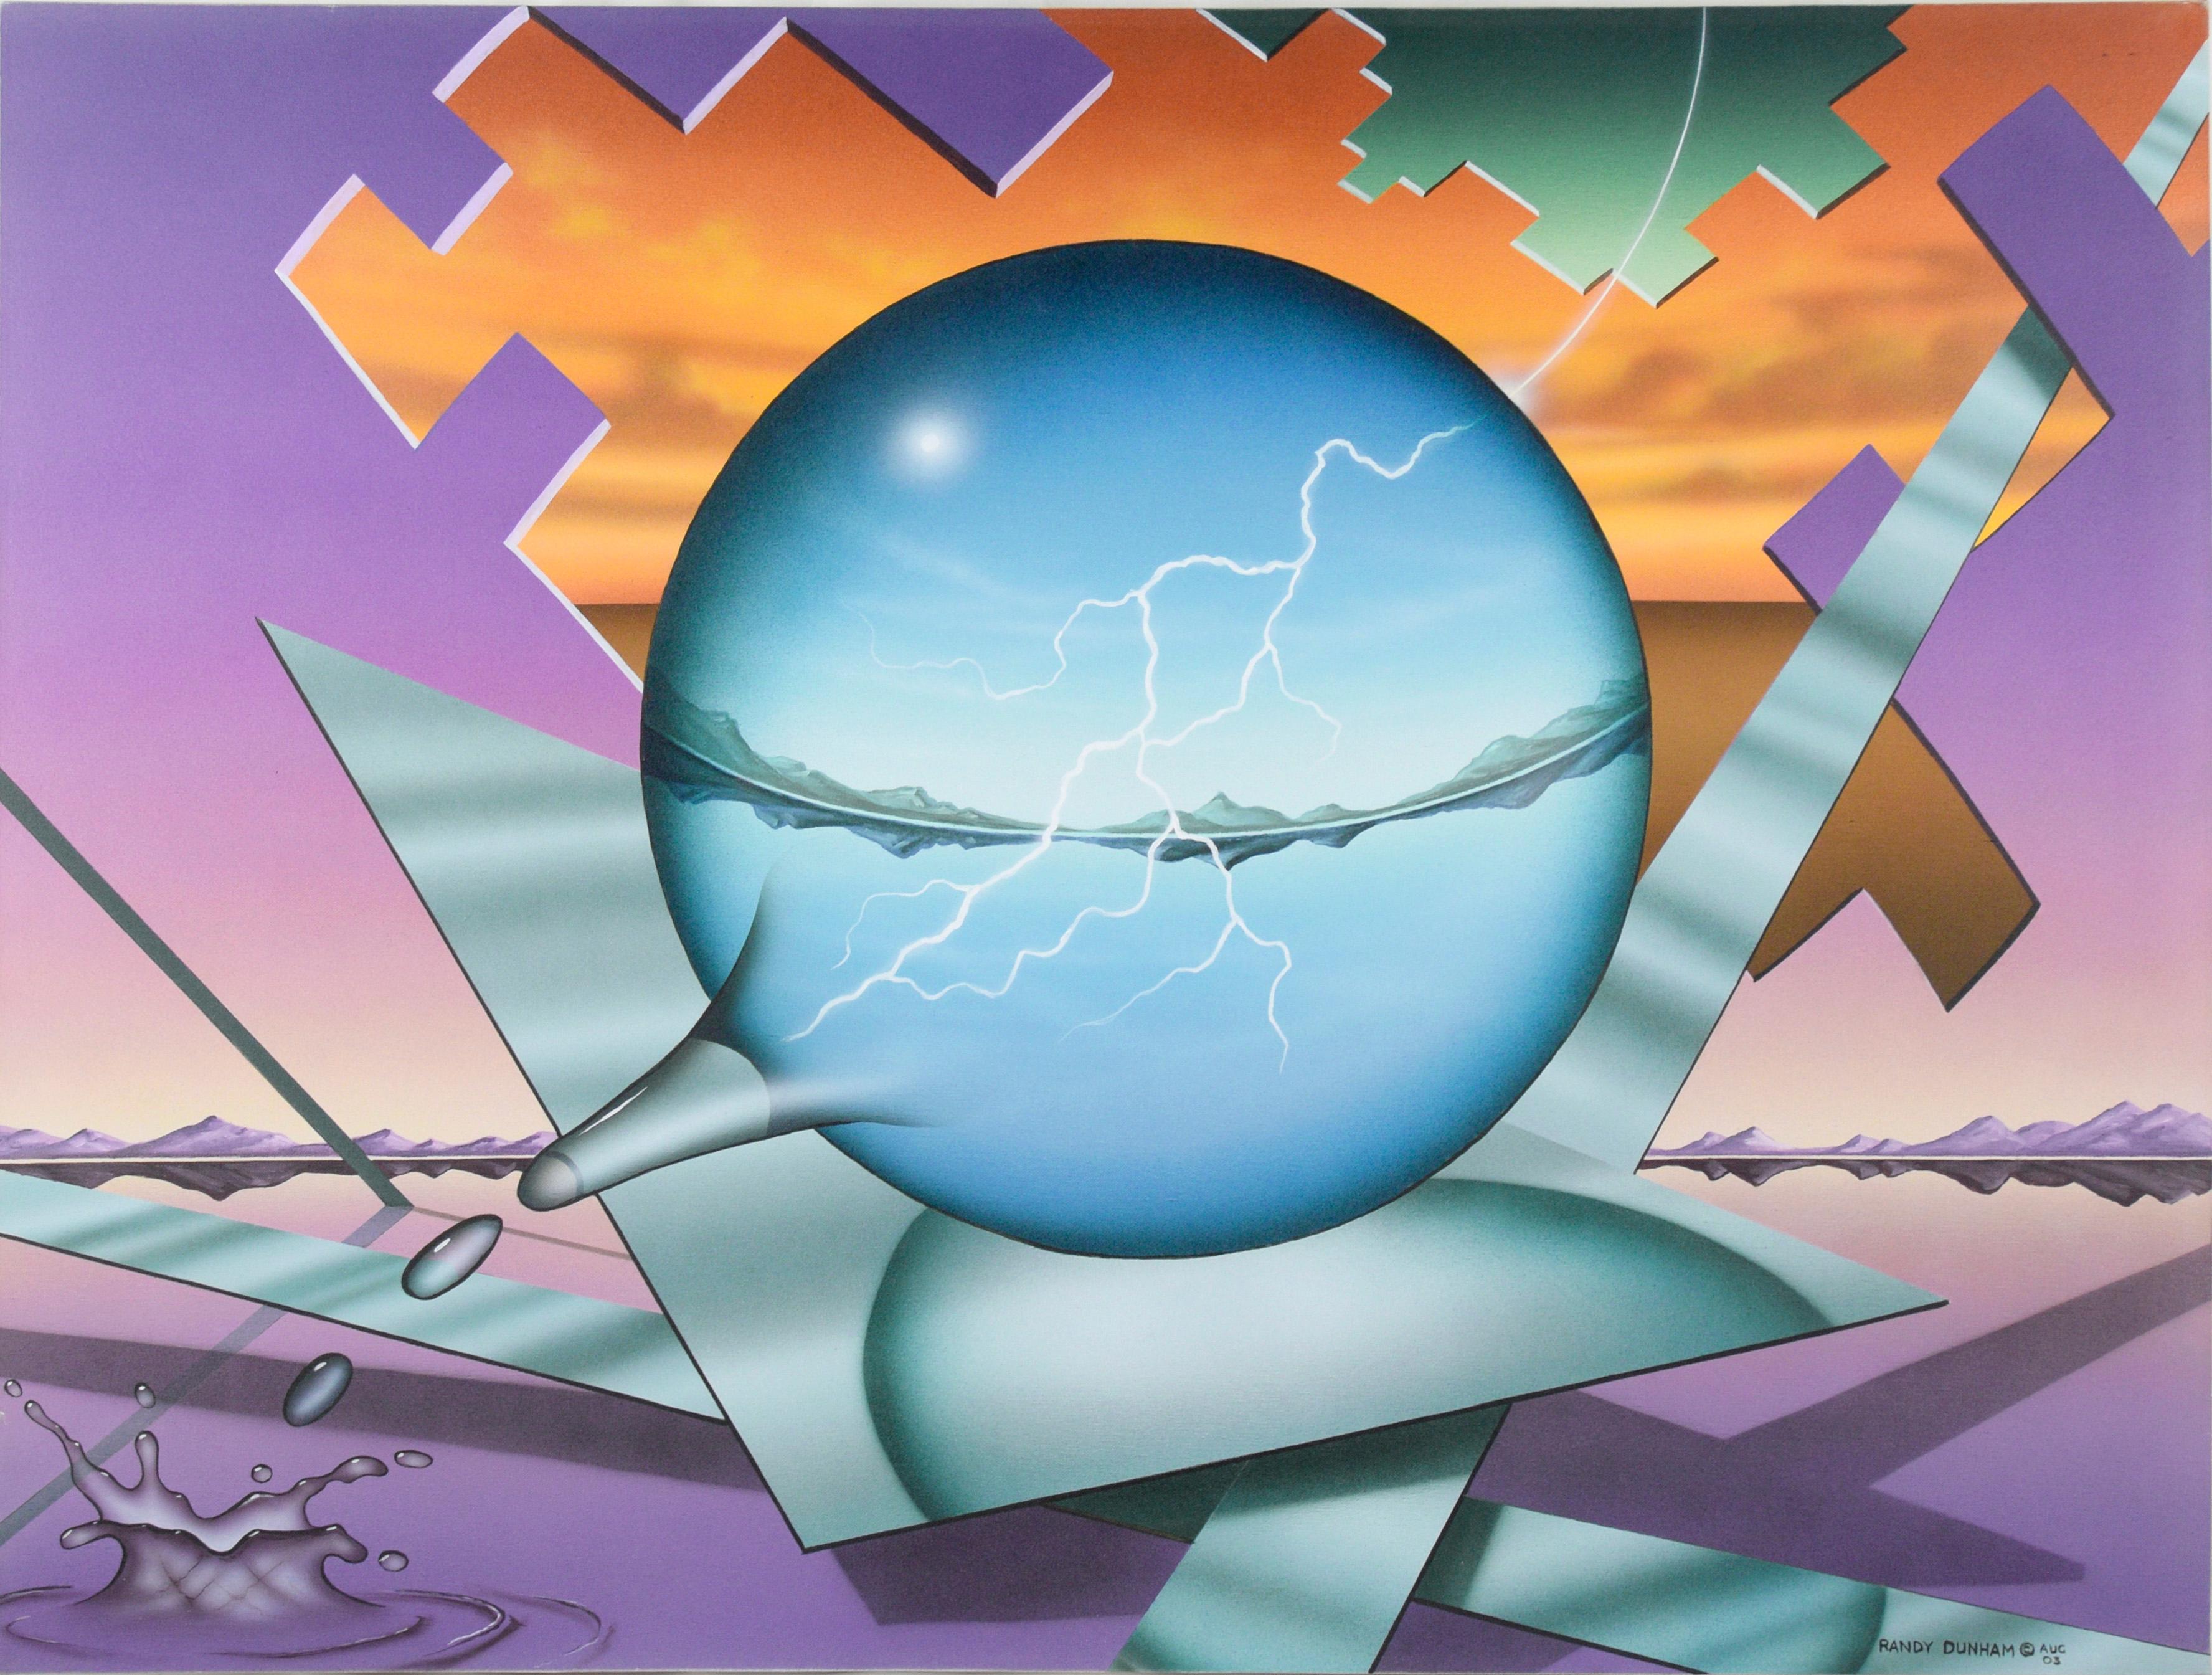 "Striking" Natures Balance - Paysage géométrique surréaliste en acrylique sur toile